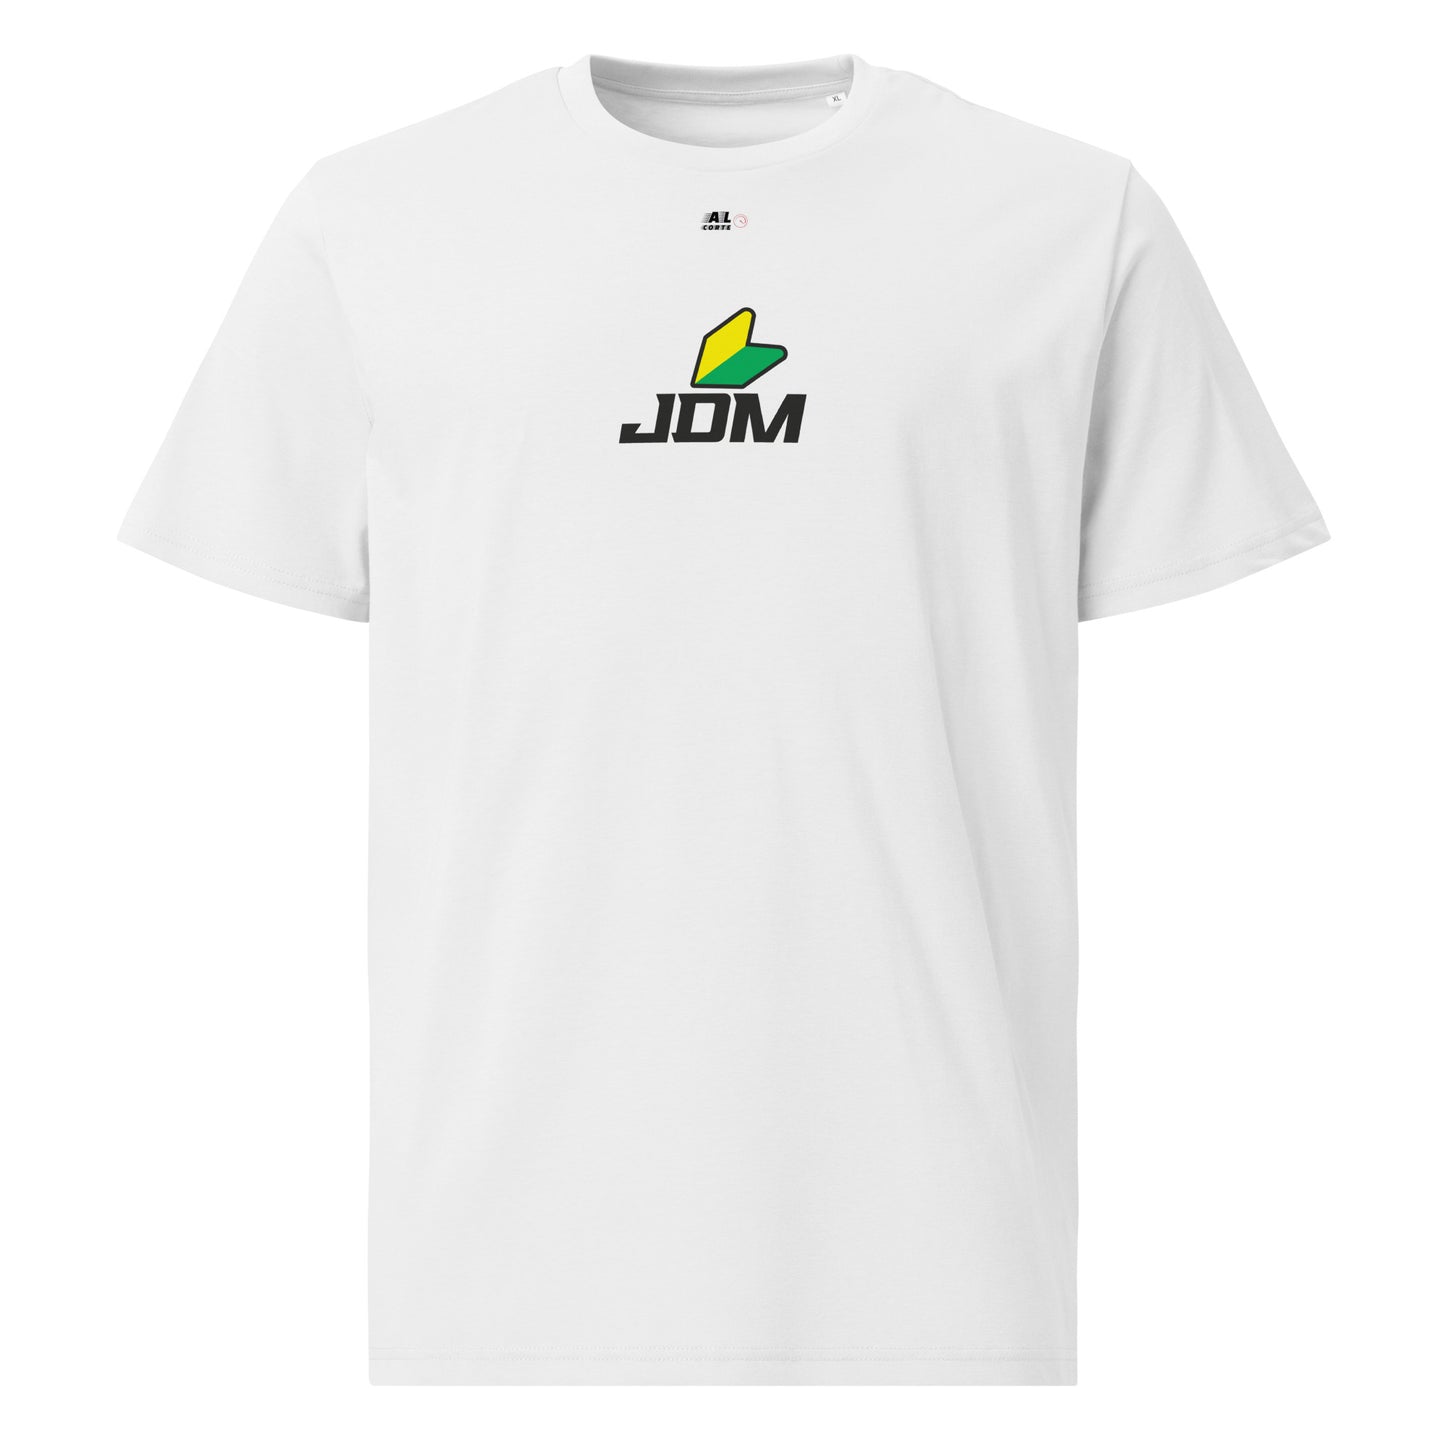 Camiseta JDM Legends